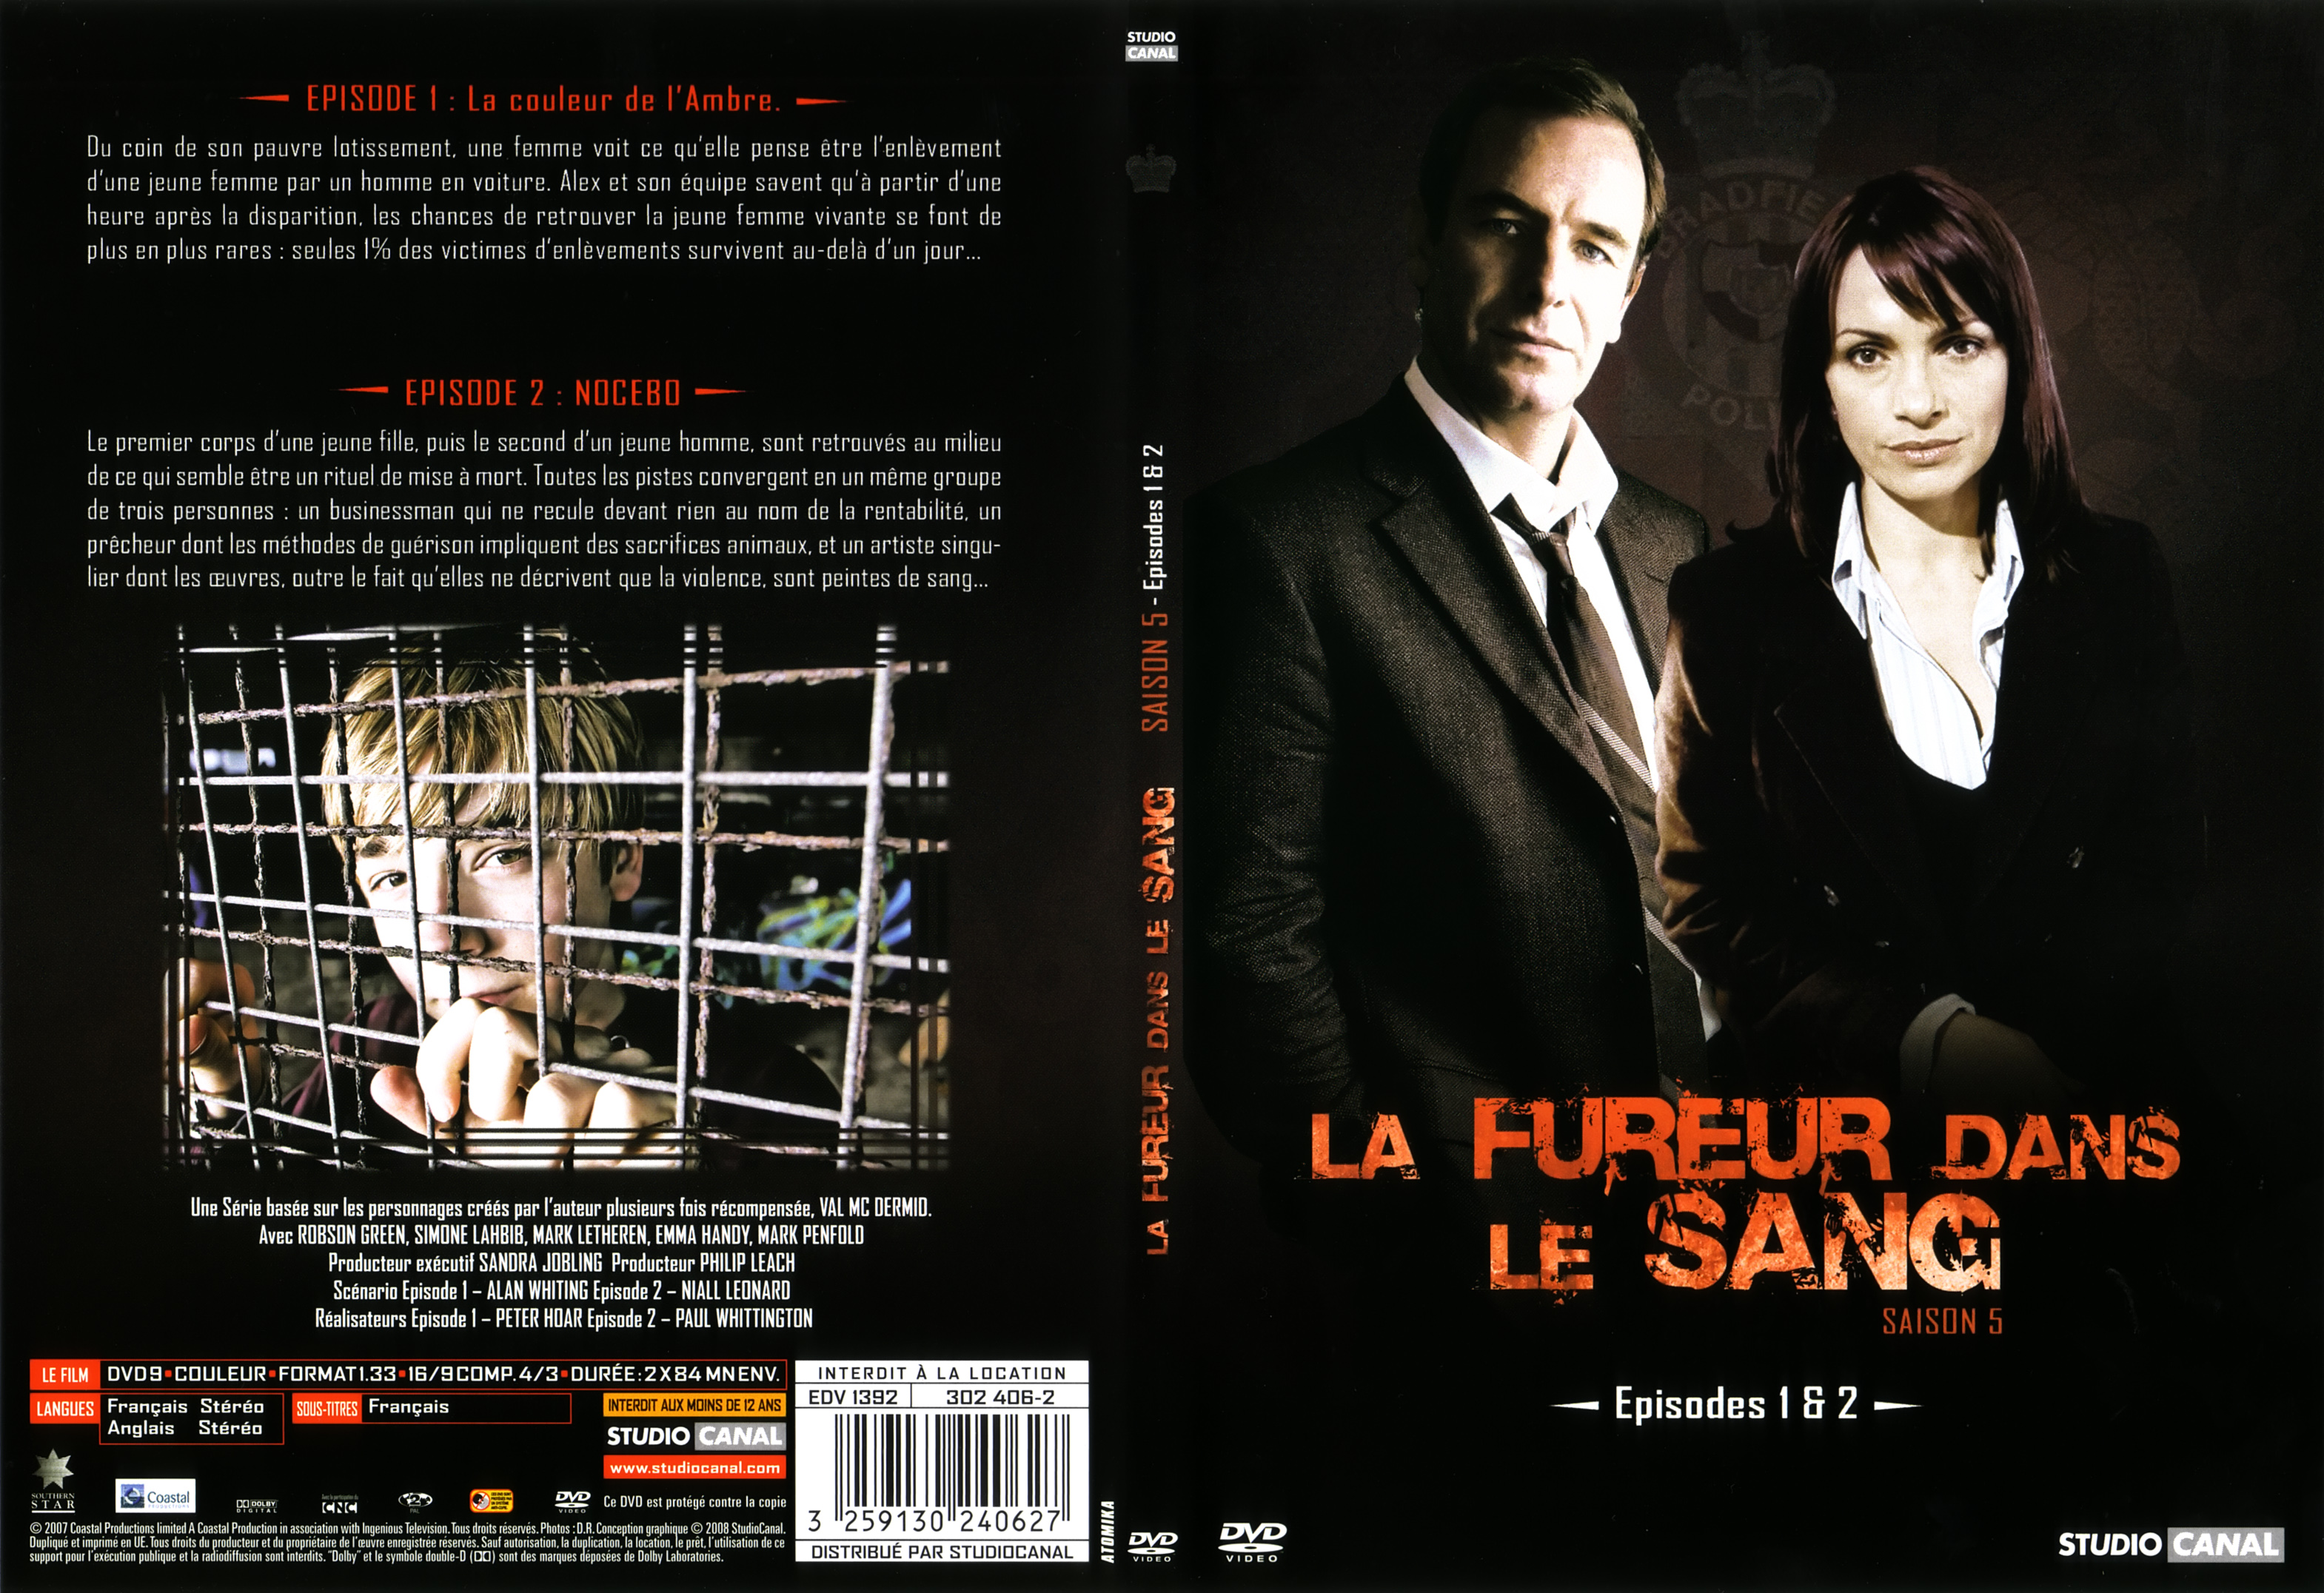 Jaquette DVD La fureur dans le sang saison 5 DVD 1